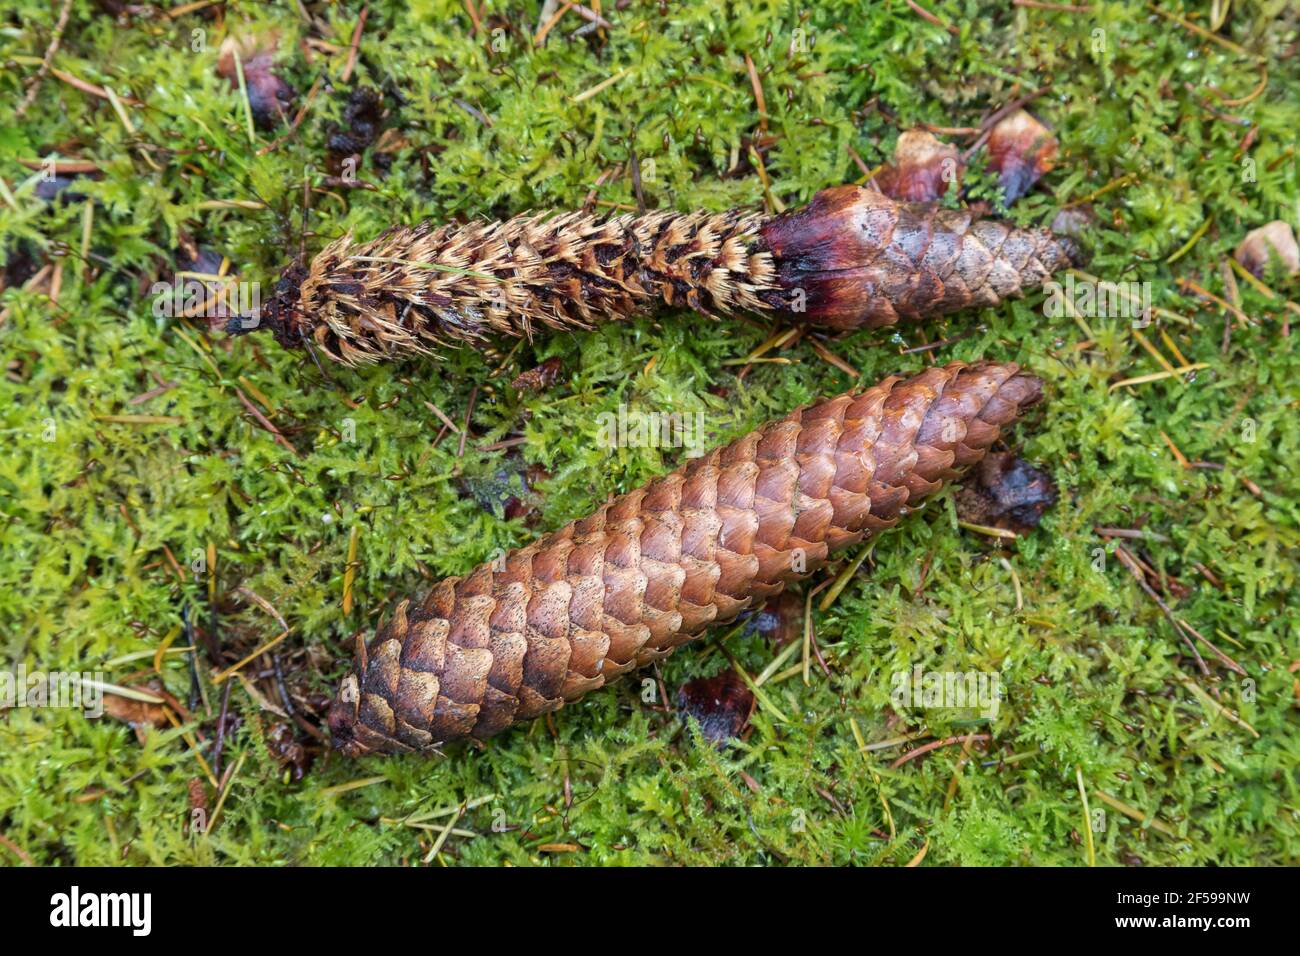 Conos de picea Noruega (Picea abies) mostrando uno comido por ardilla roja (Sciurus vulgaris), bosque Kielder, Northumberland, Reino Unido Foto de stock